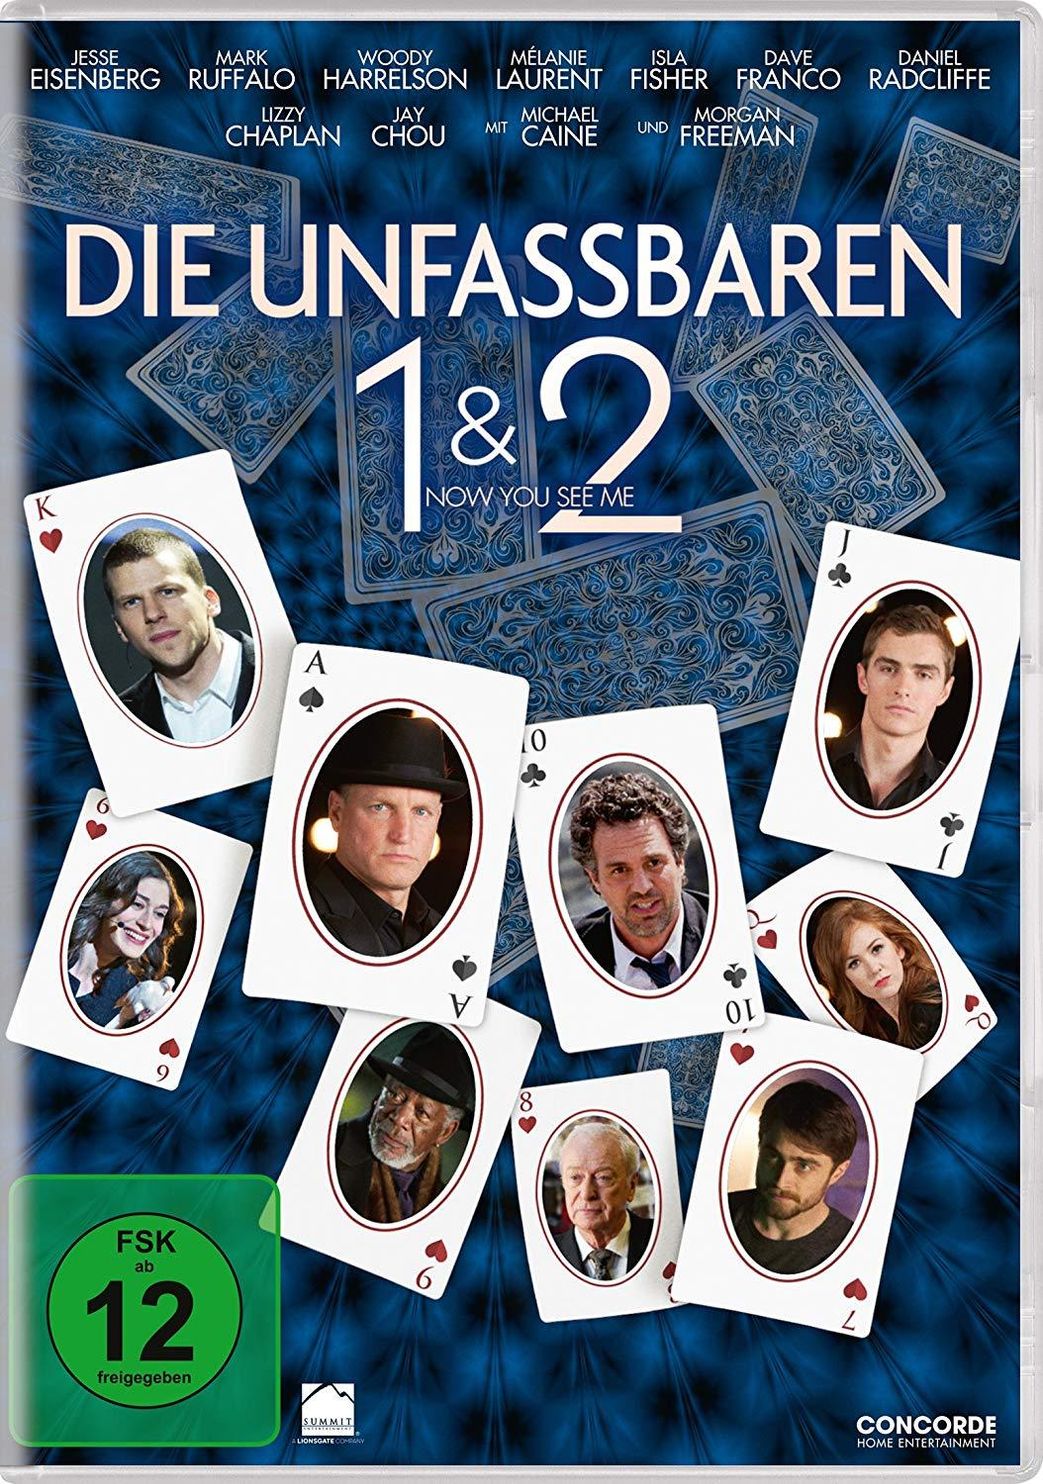 Die Unfassbaren - Now you see me 1 & 2 DVD | Weltbild.de